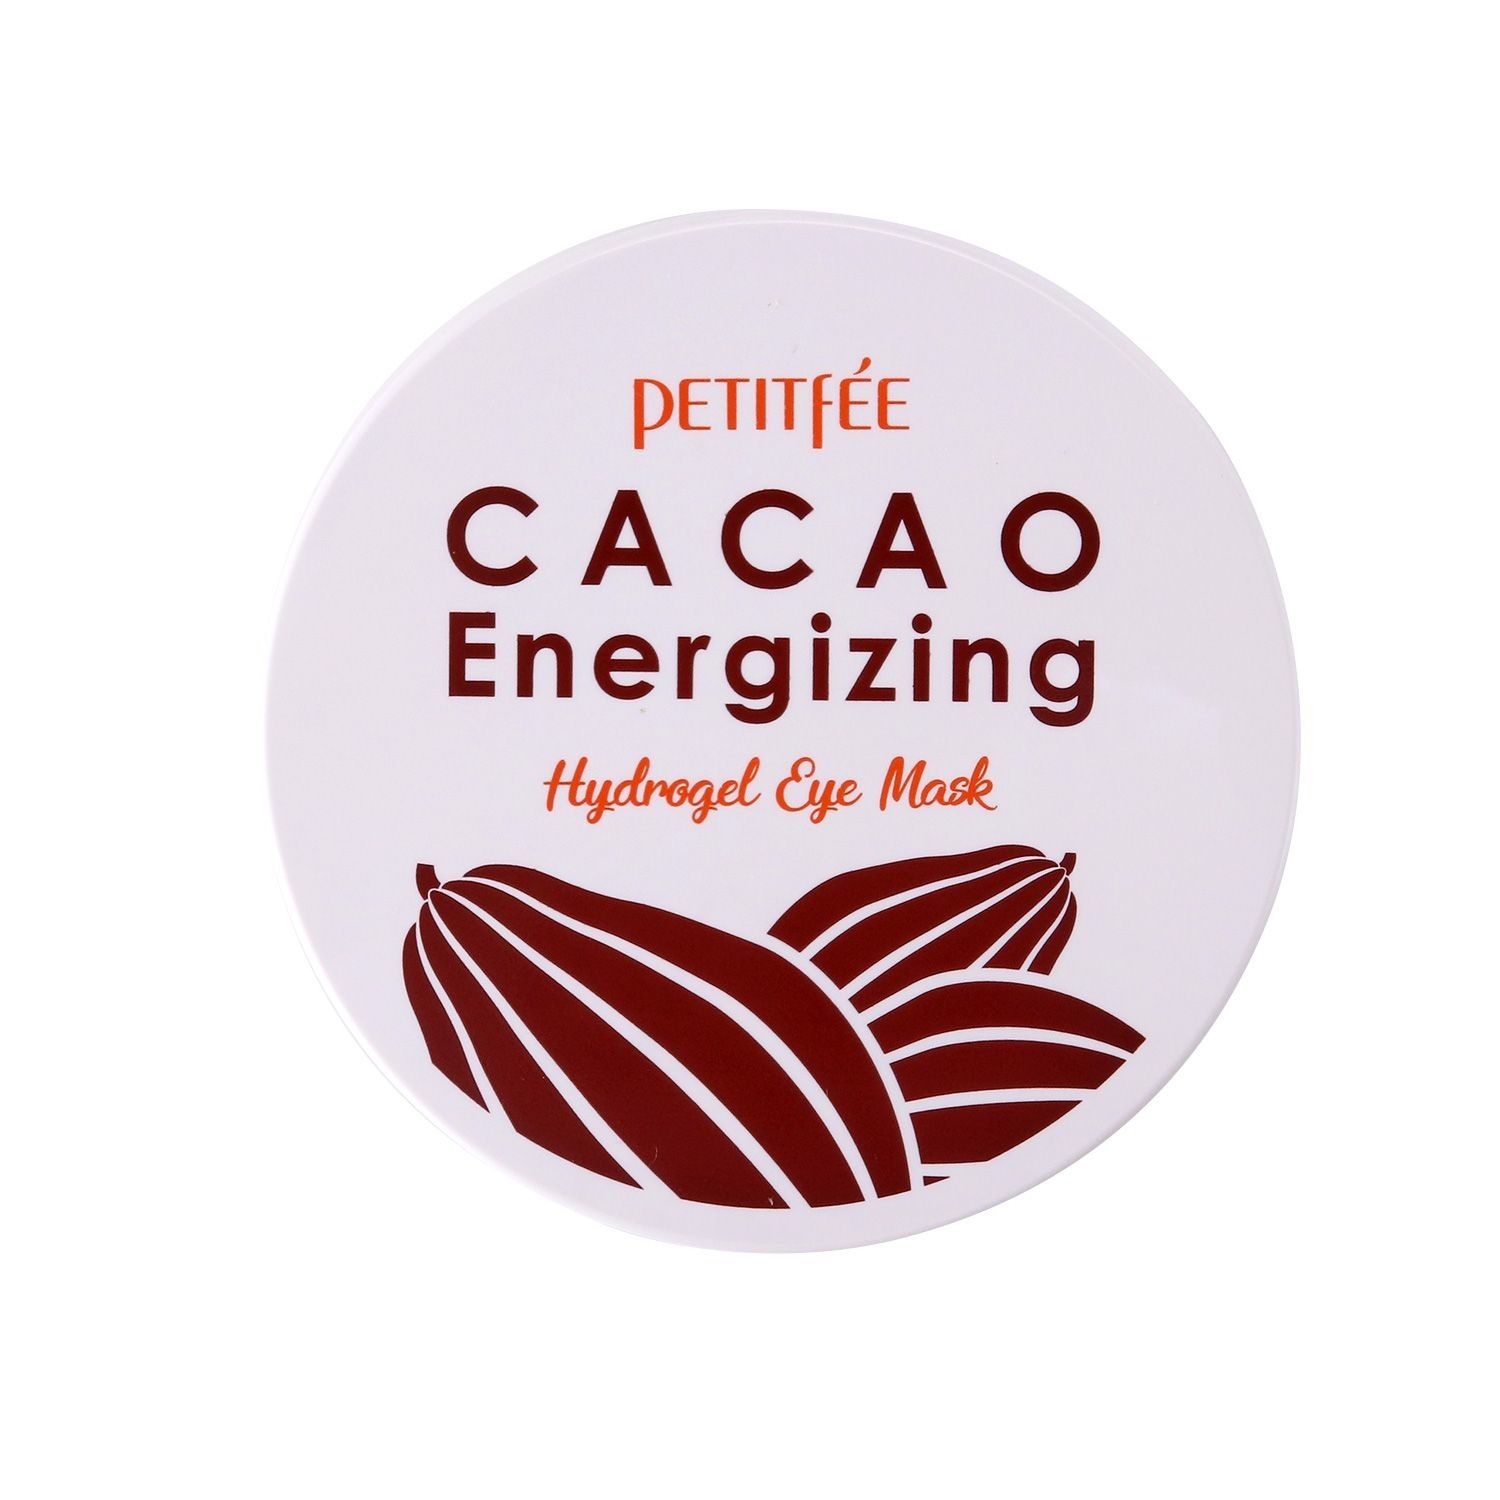 Petitfee  Koelf Cacao Energizing Hydrogel Eye Mask 84 g  60 pcs